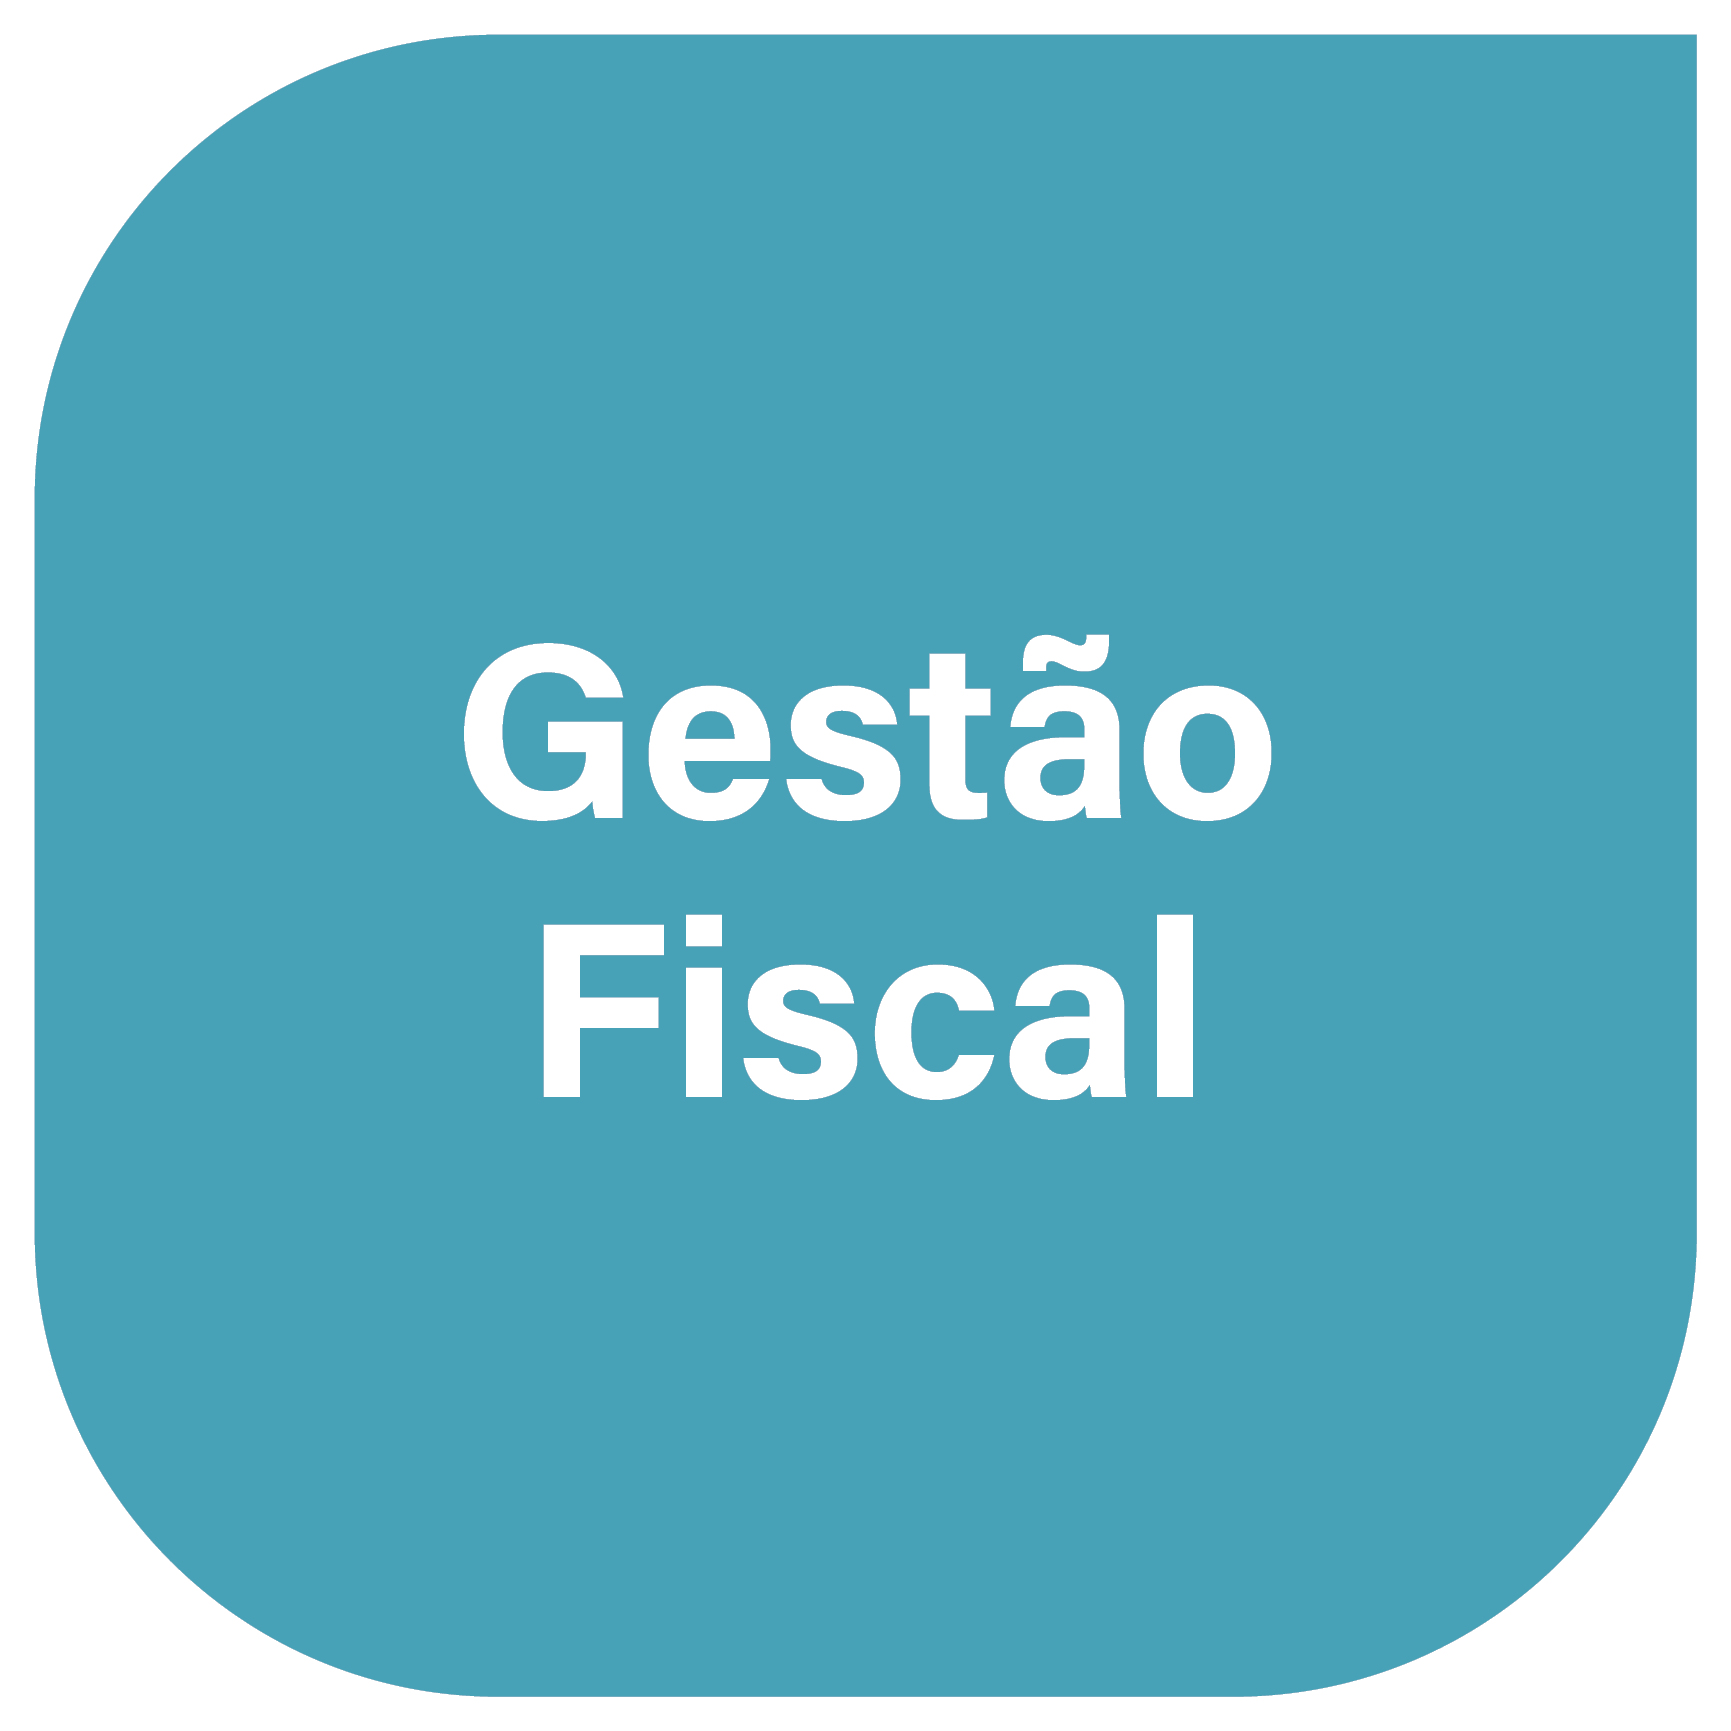 Gestão fiscal